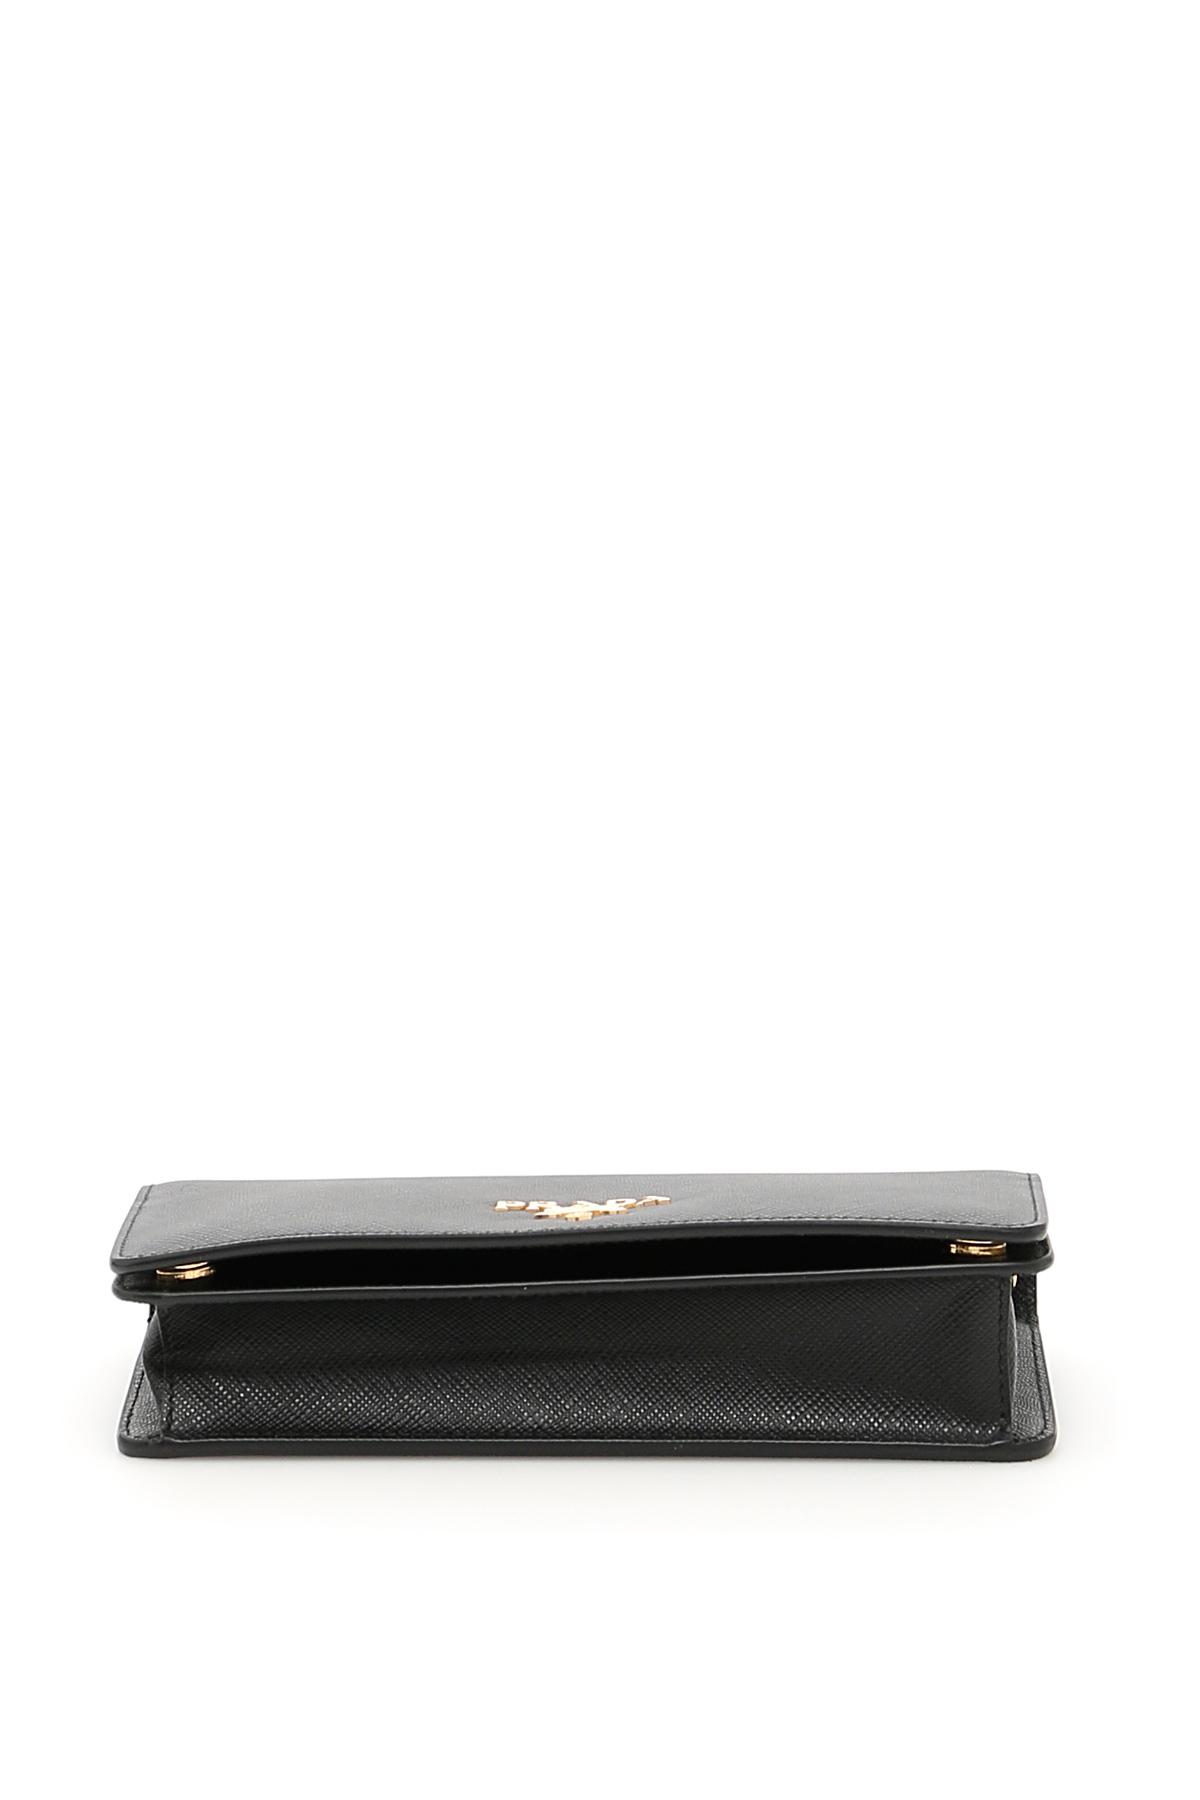 Prada Tessuto Leather Flap Wallet on Chain Black